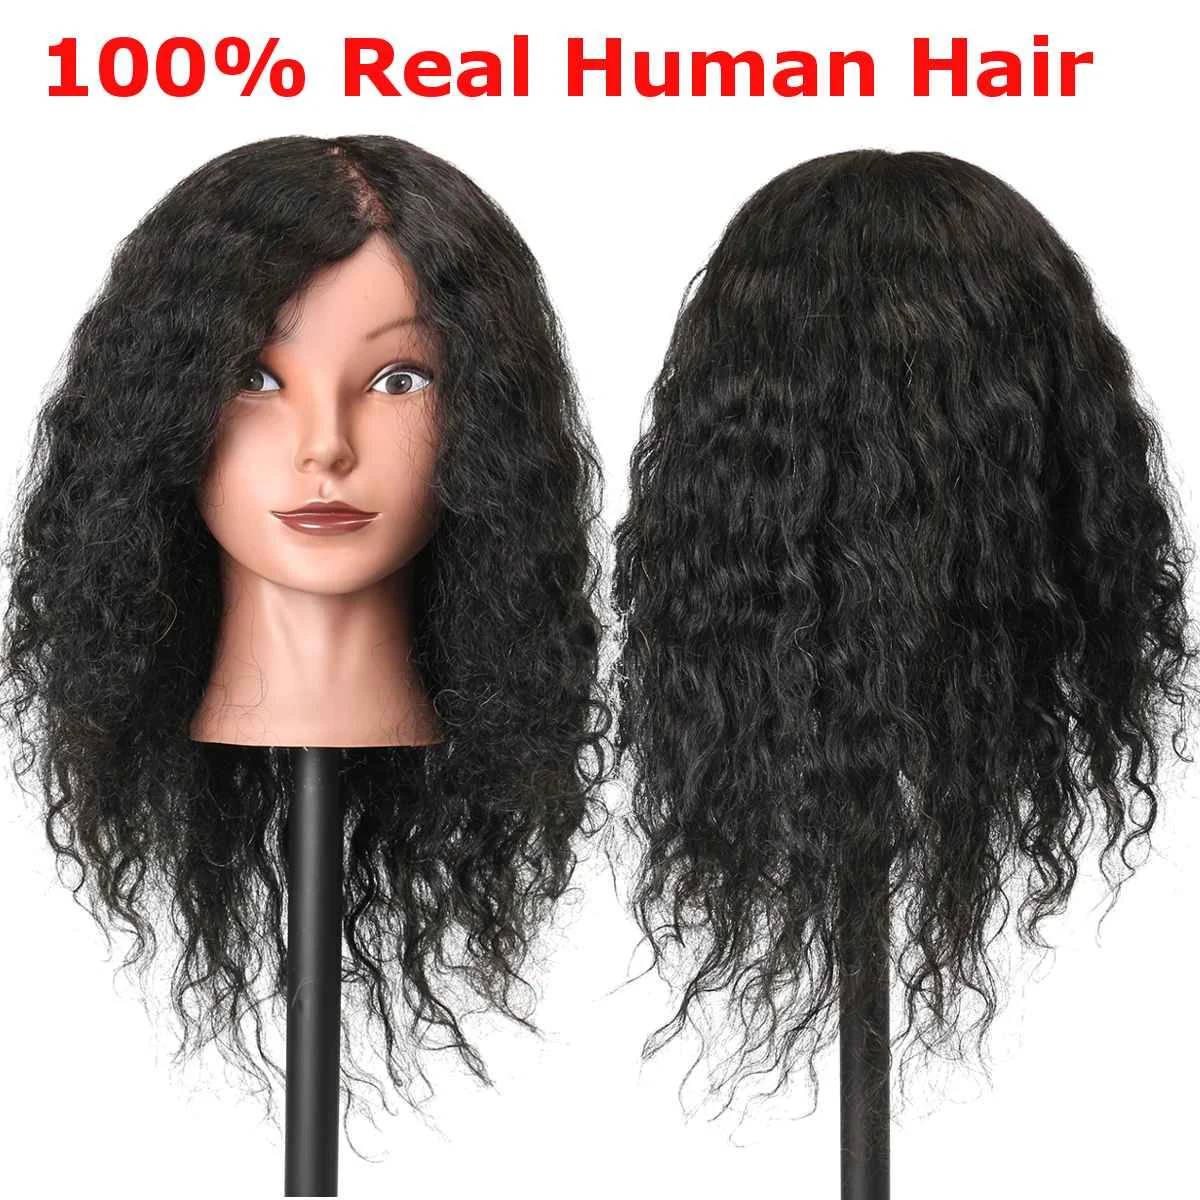 18 дюймов человеческие волосы голова манекен для парихмахеров модель для практики длинные вьющиеся волосы салон волос практика голова-манекен